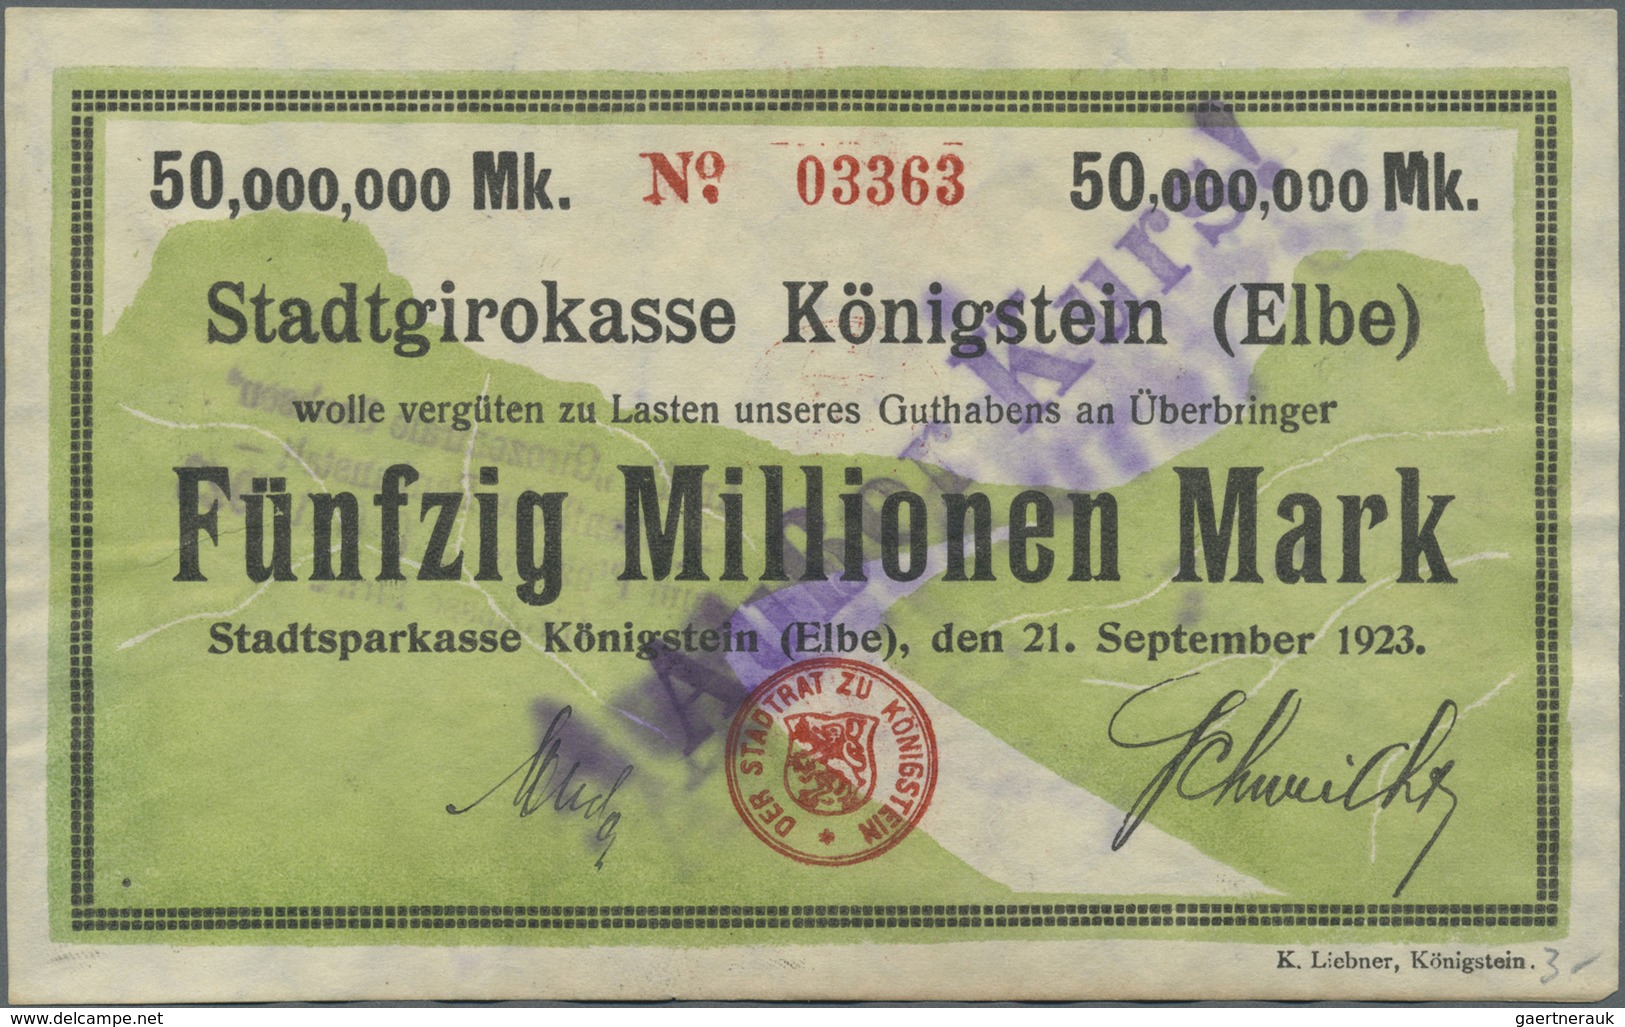 Deutschland - Notgeld - Sachsen: Königstein, Stadtsparkasse, 100 Tsd. Bis 500 Mio. Mark Überdruck, 2 - [11] Local Banknote Issues